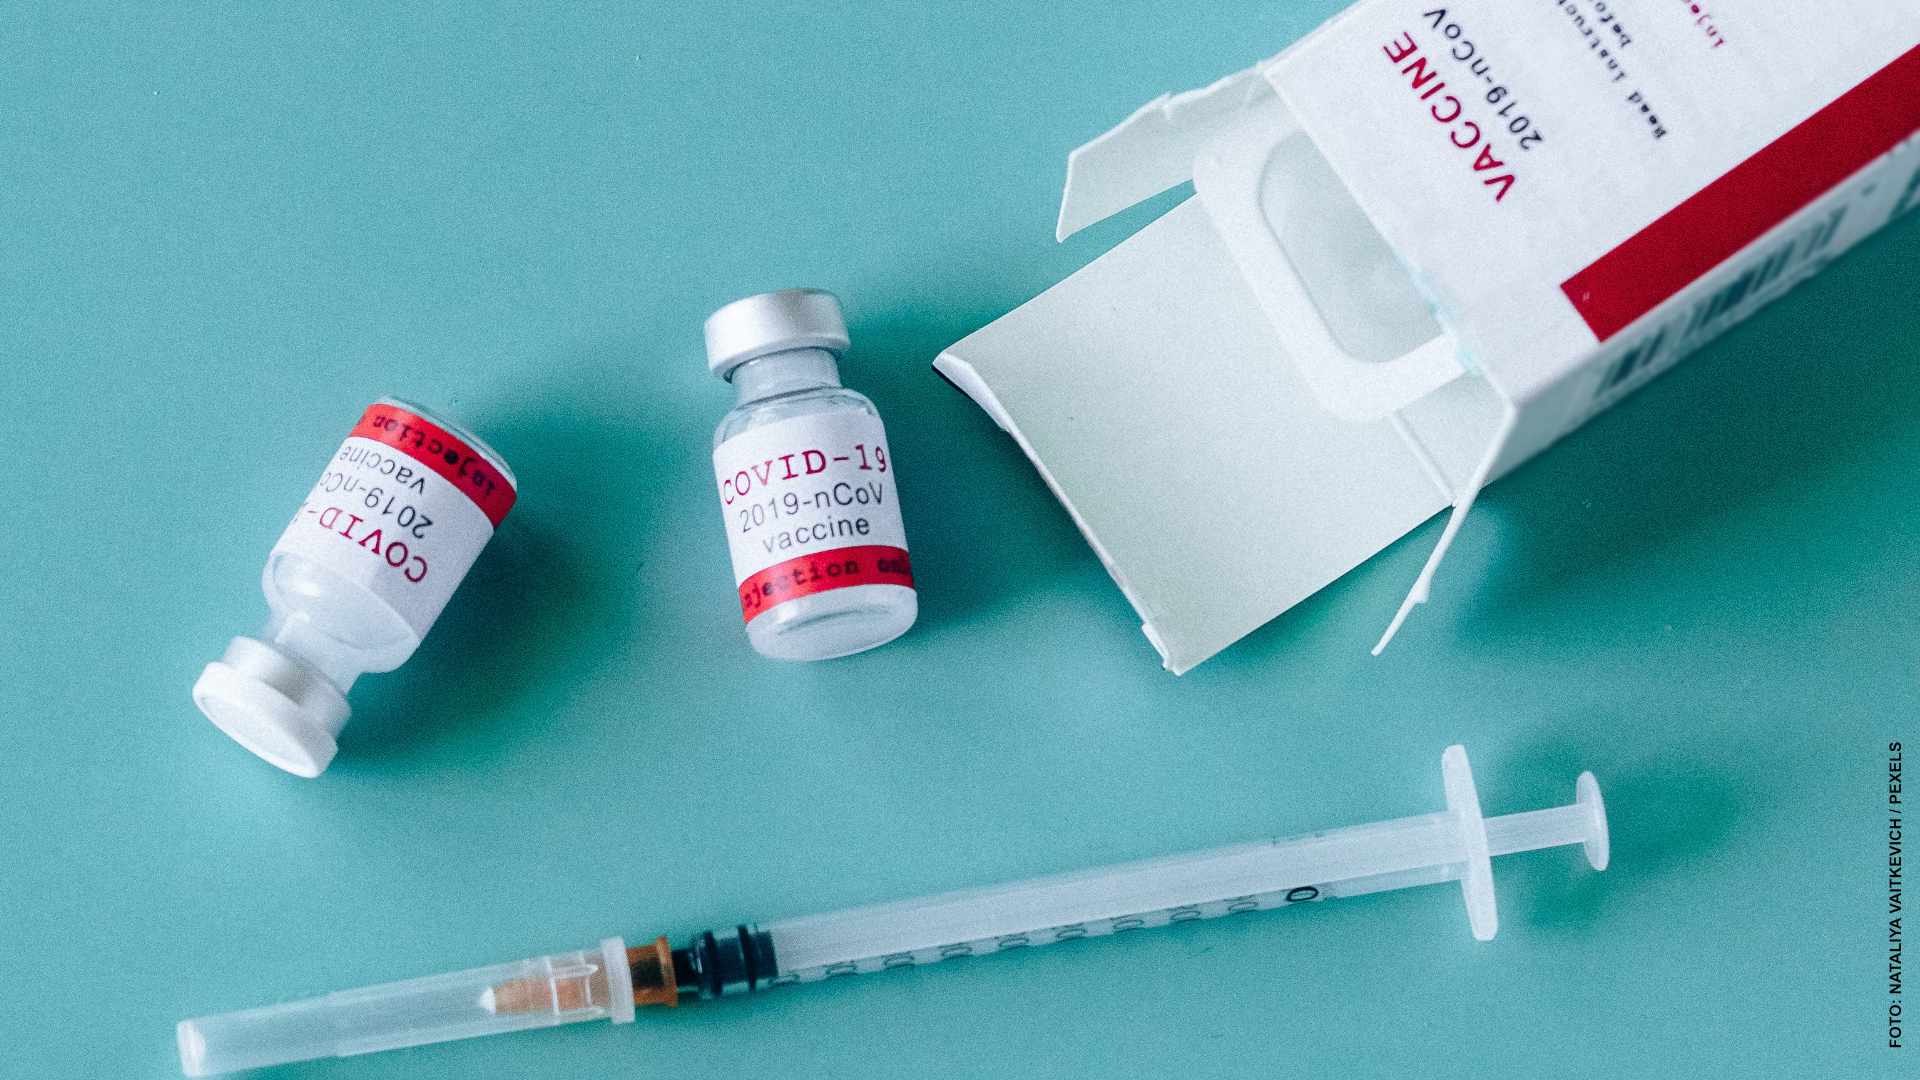 Aprueban cambiar ciertas vacunas en segunda dosis